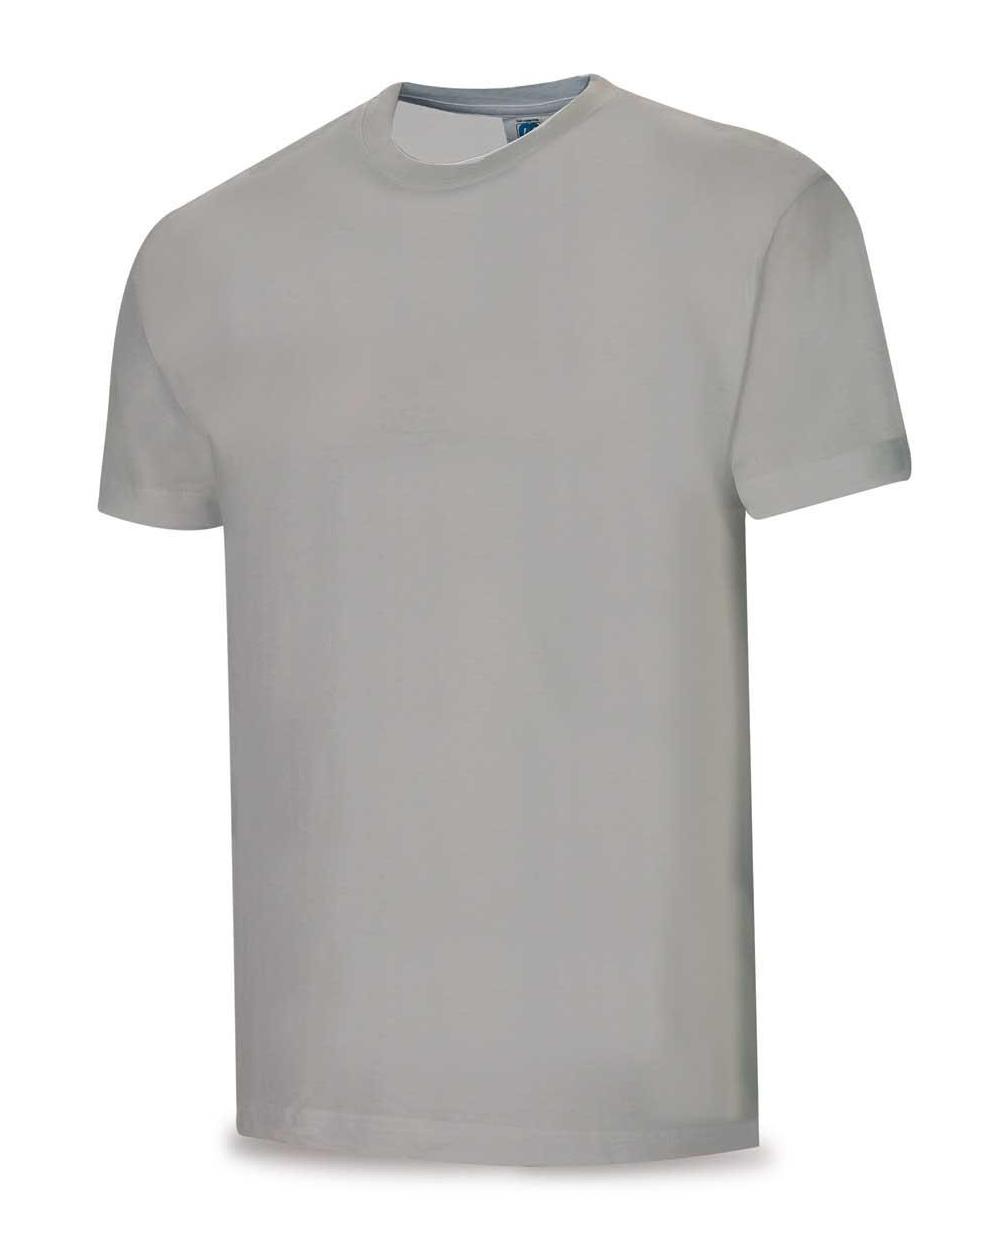 Comprar Camiseta Algodón Gris 1288-Tsg barato